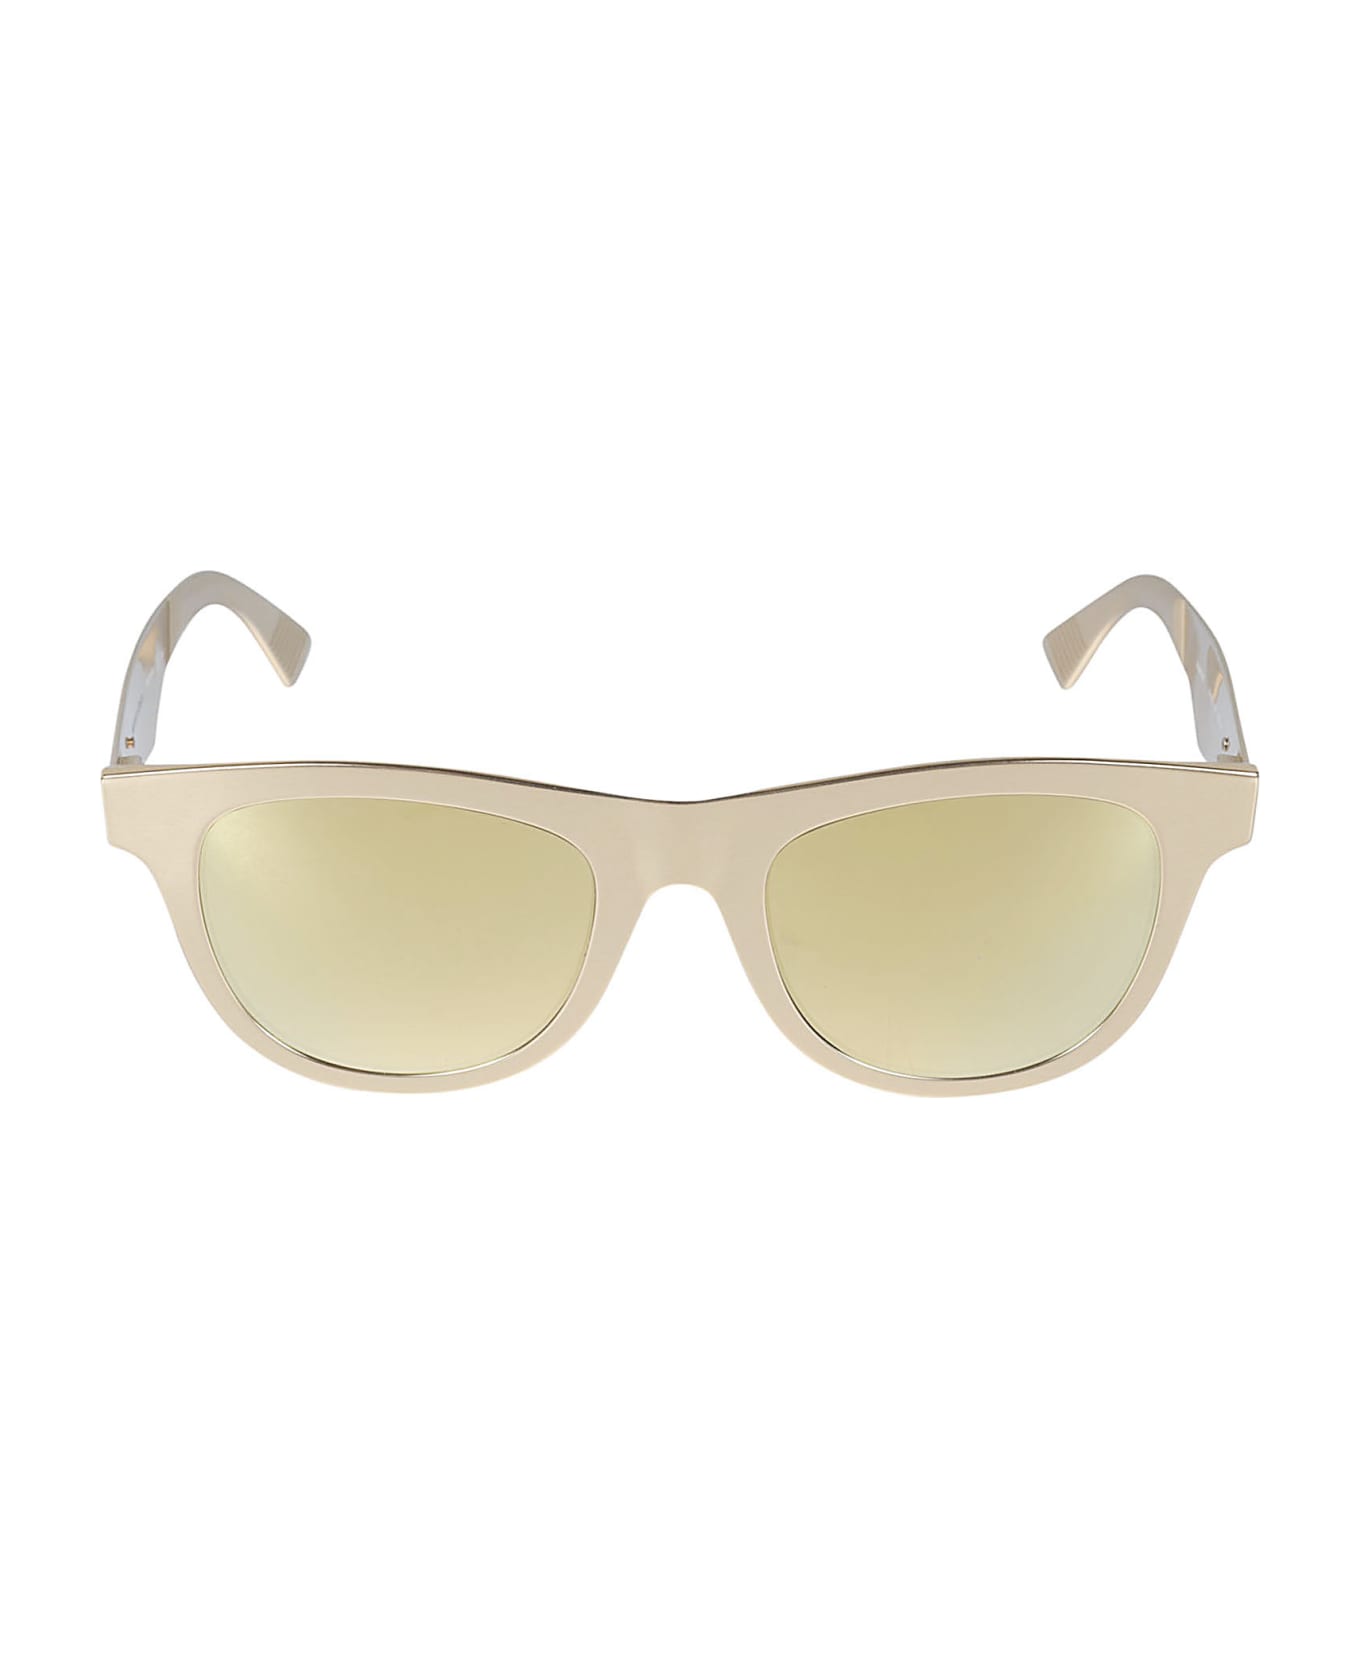 Bottega Veneta Eyewear Wayfarer Sunglasses - Gold